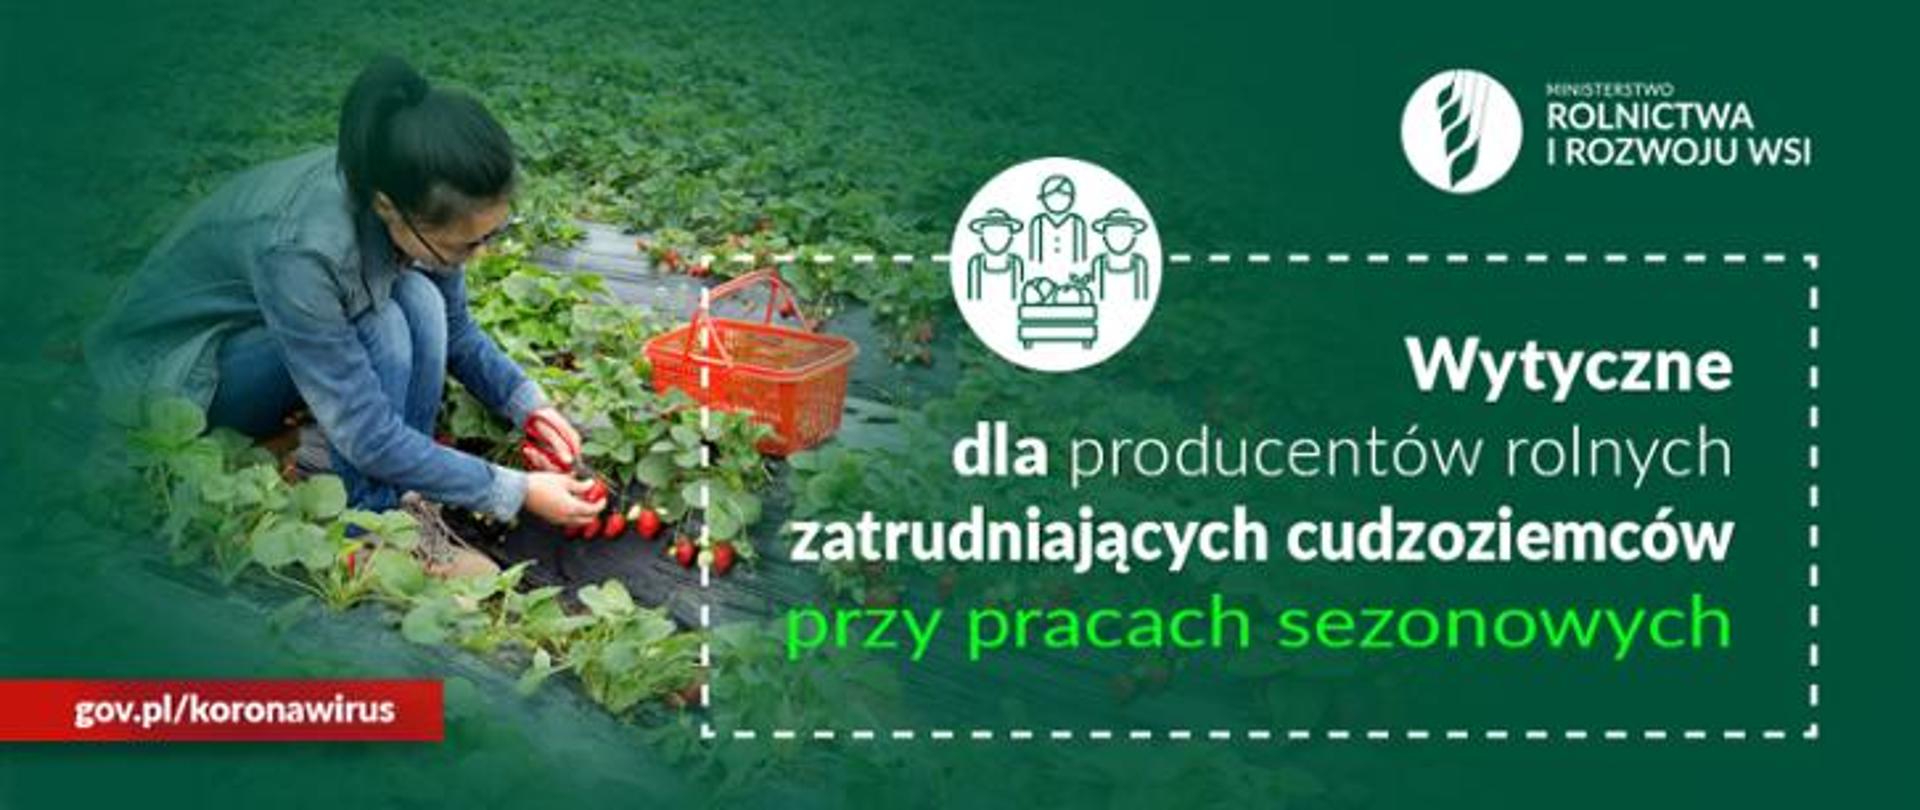 Na zielonym tle po lewej stronie zdjęcia kobieta zbiera truskawki. Po prawej stornie napis: Wytyczne dla producentów rolnych zatrudniających cudzoziemców przy pracach sezonowych. Na dole zdjęcia adres gov.pl/koronawirus